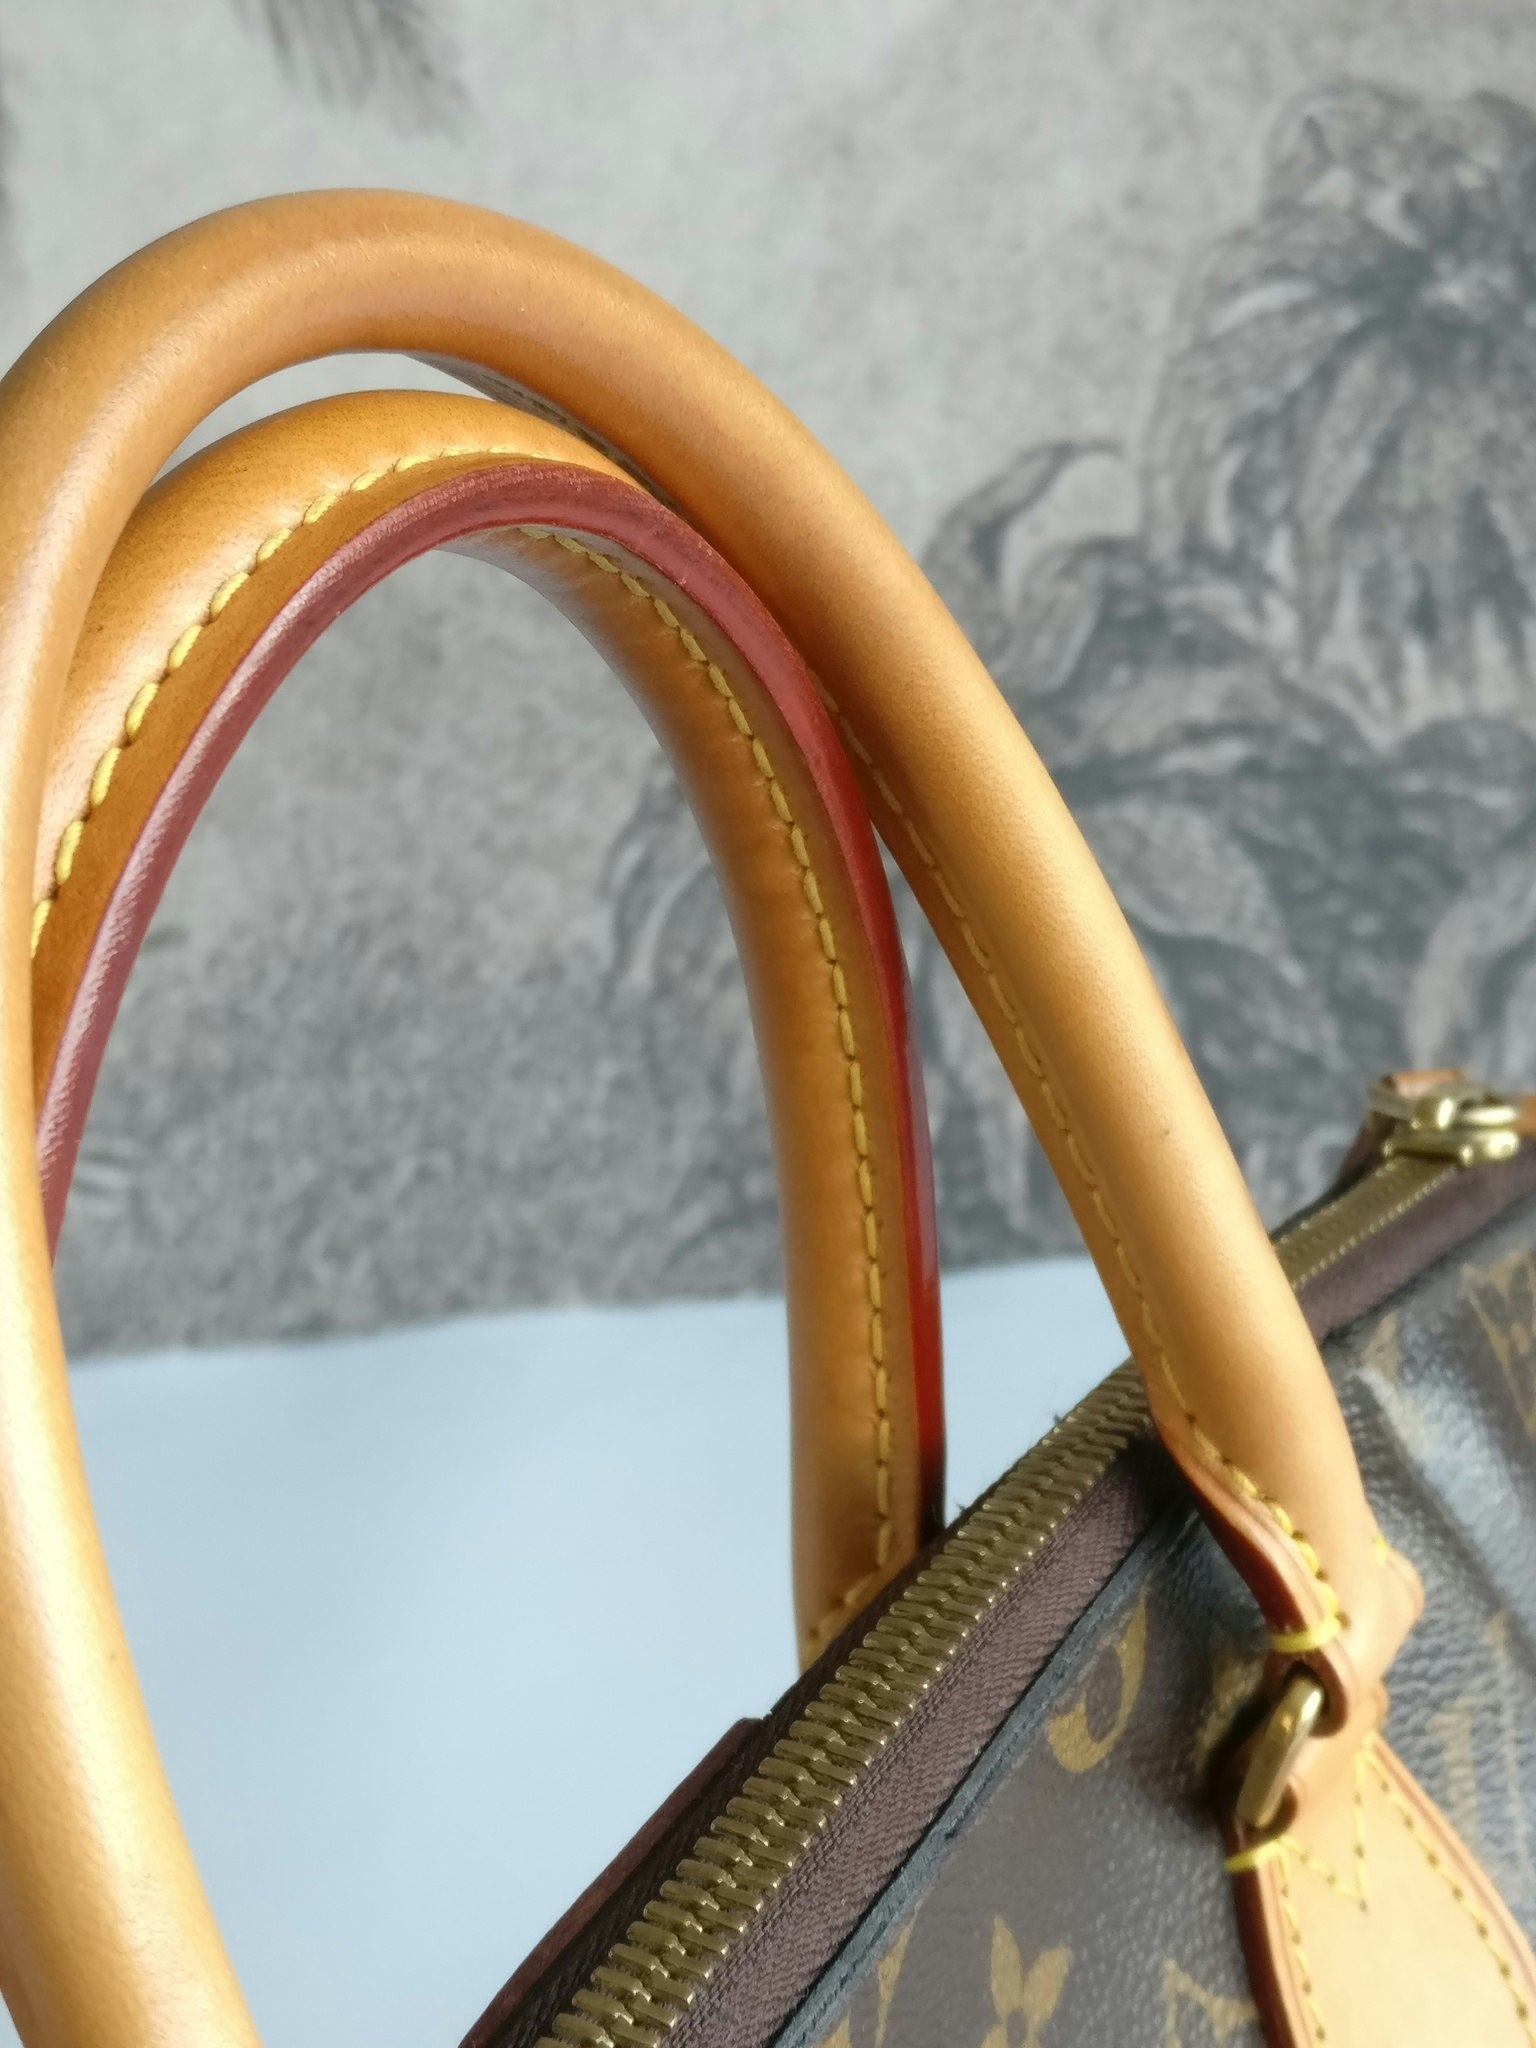 Turenne PM Monogram – Keeks Designer Handbags